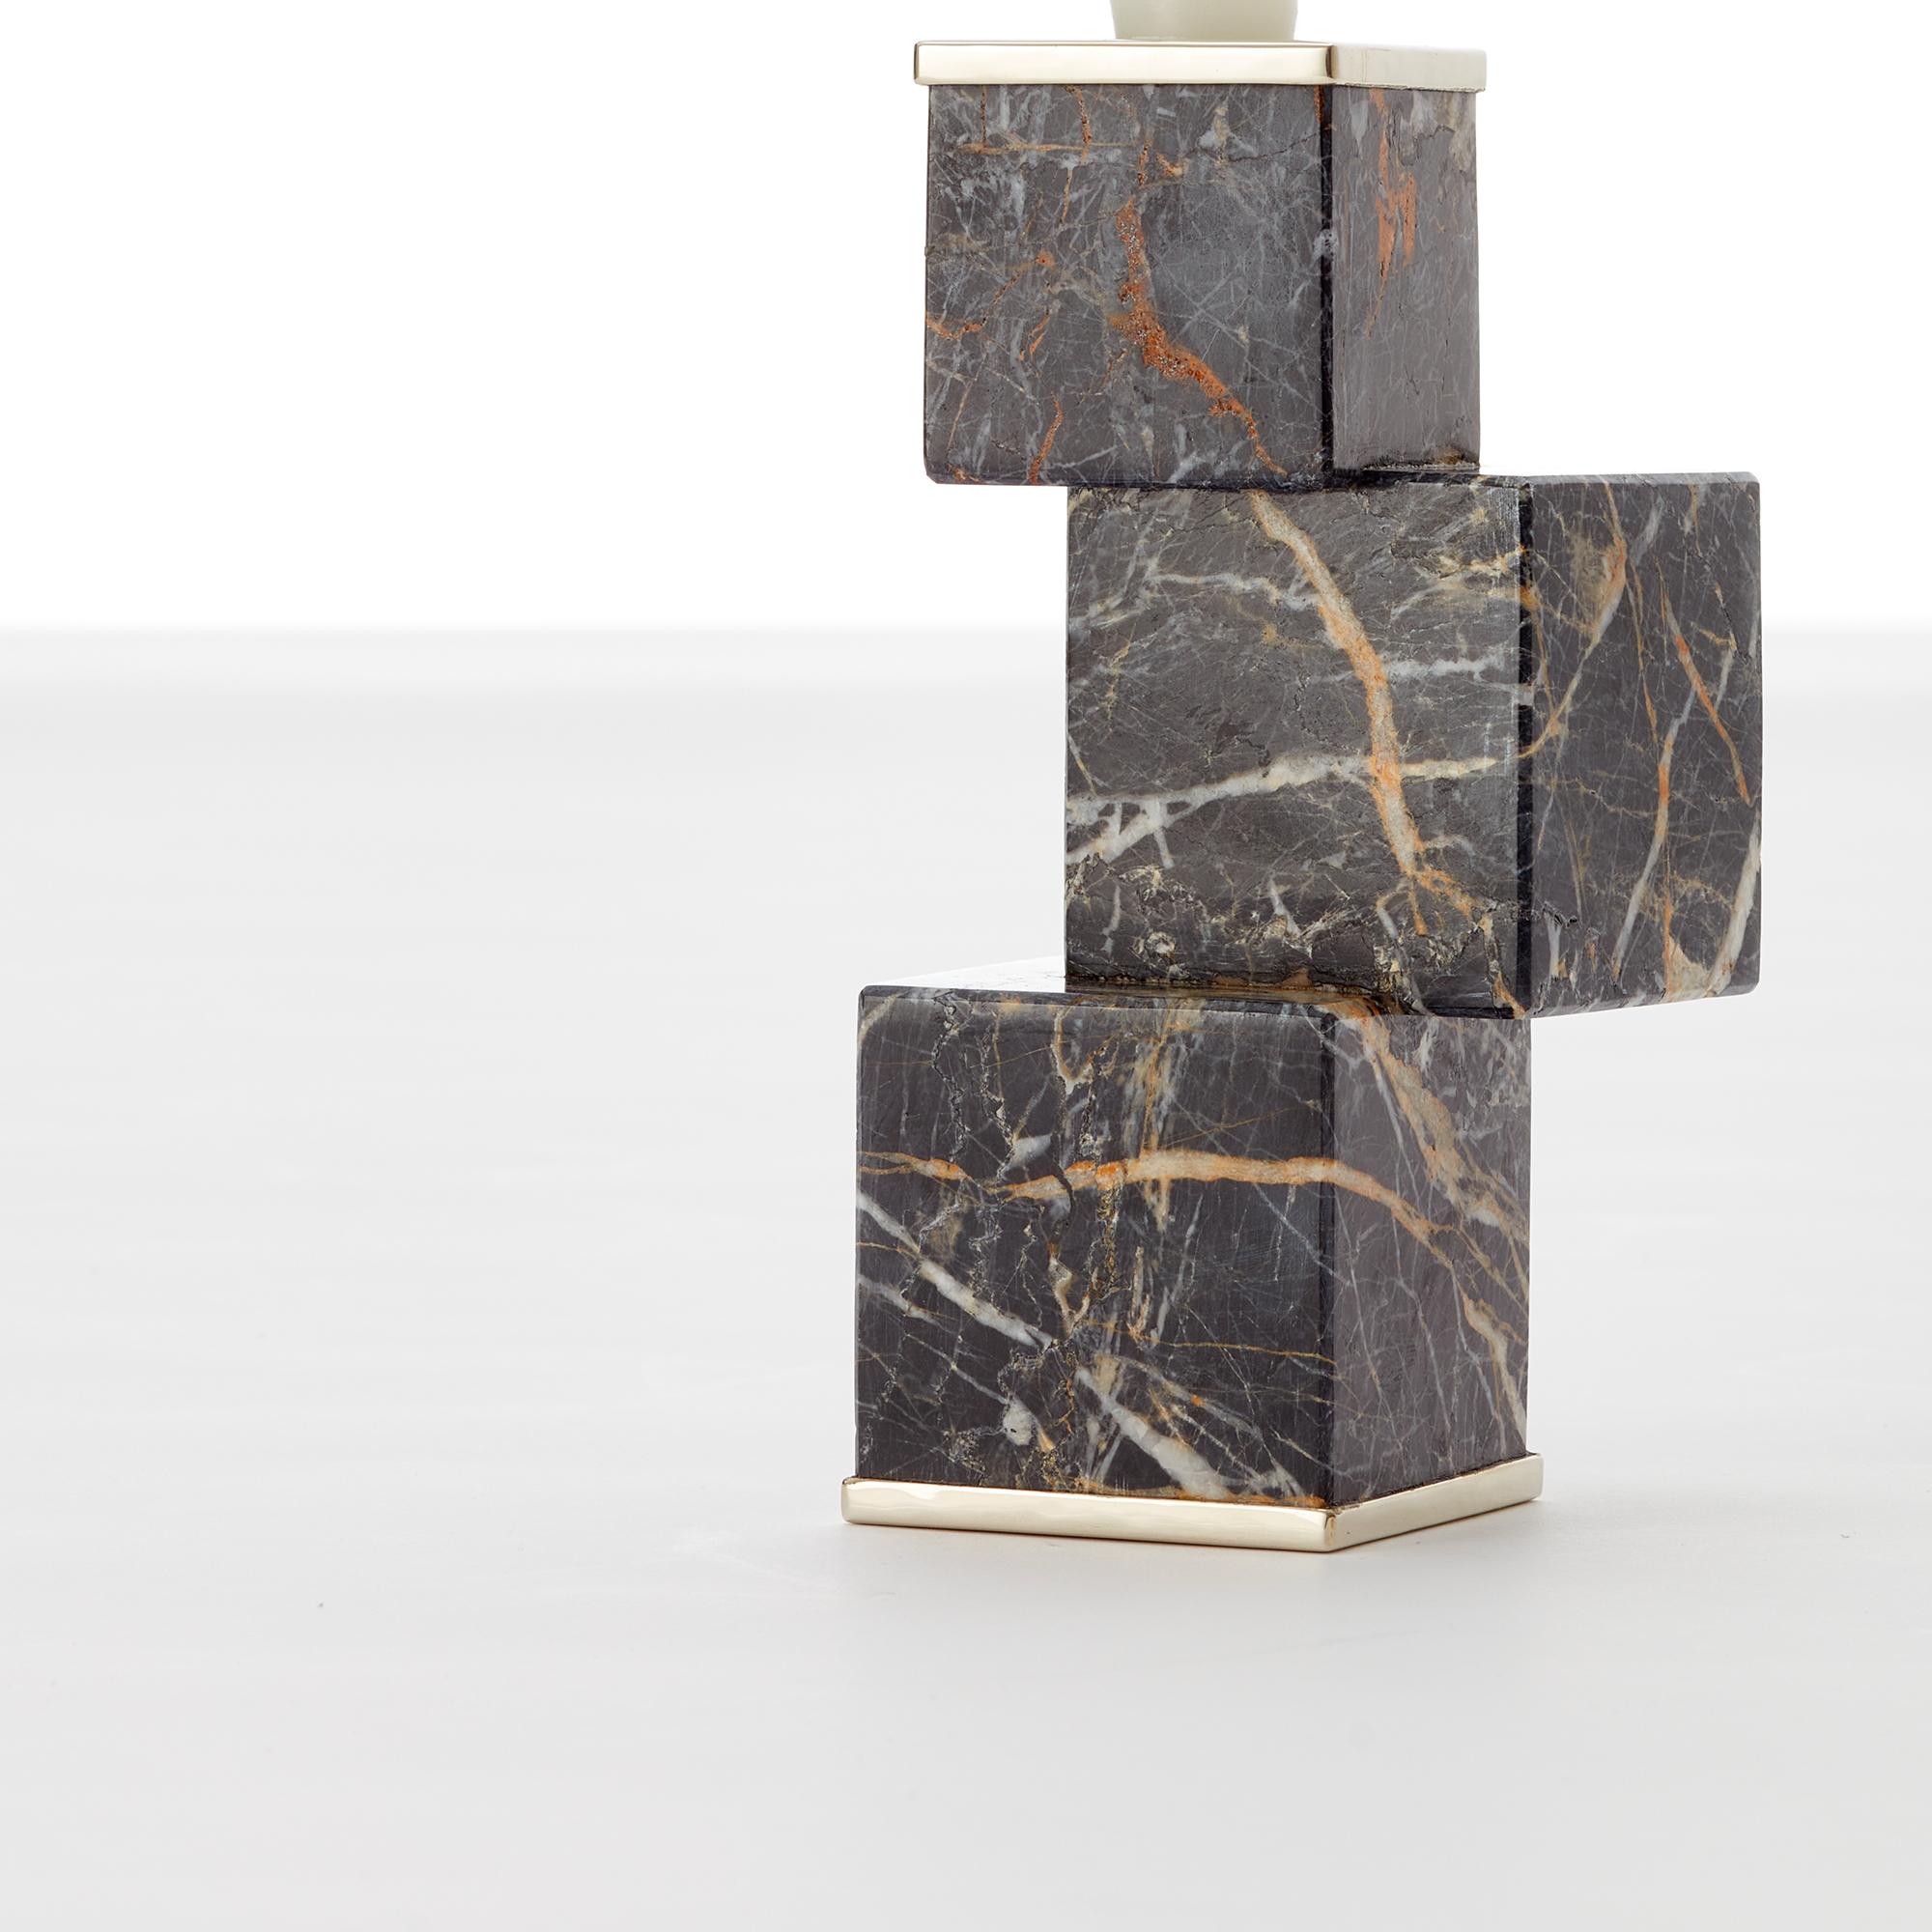 Eine Komposition aus Onyx und Alpaka-Metall. Inspiriert von den reinen und wesentlichen Linien einer Struktur aus massiven Steinen, mit einer Schwindelstabilität.

Unsere Stücke werden von Hand gefertigt. Ein Unikat.
Alle natürlichen Steine können